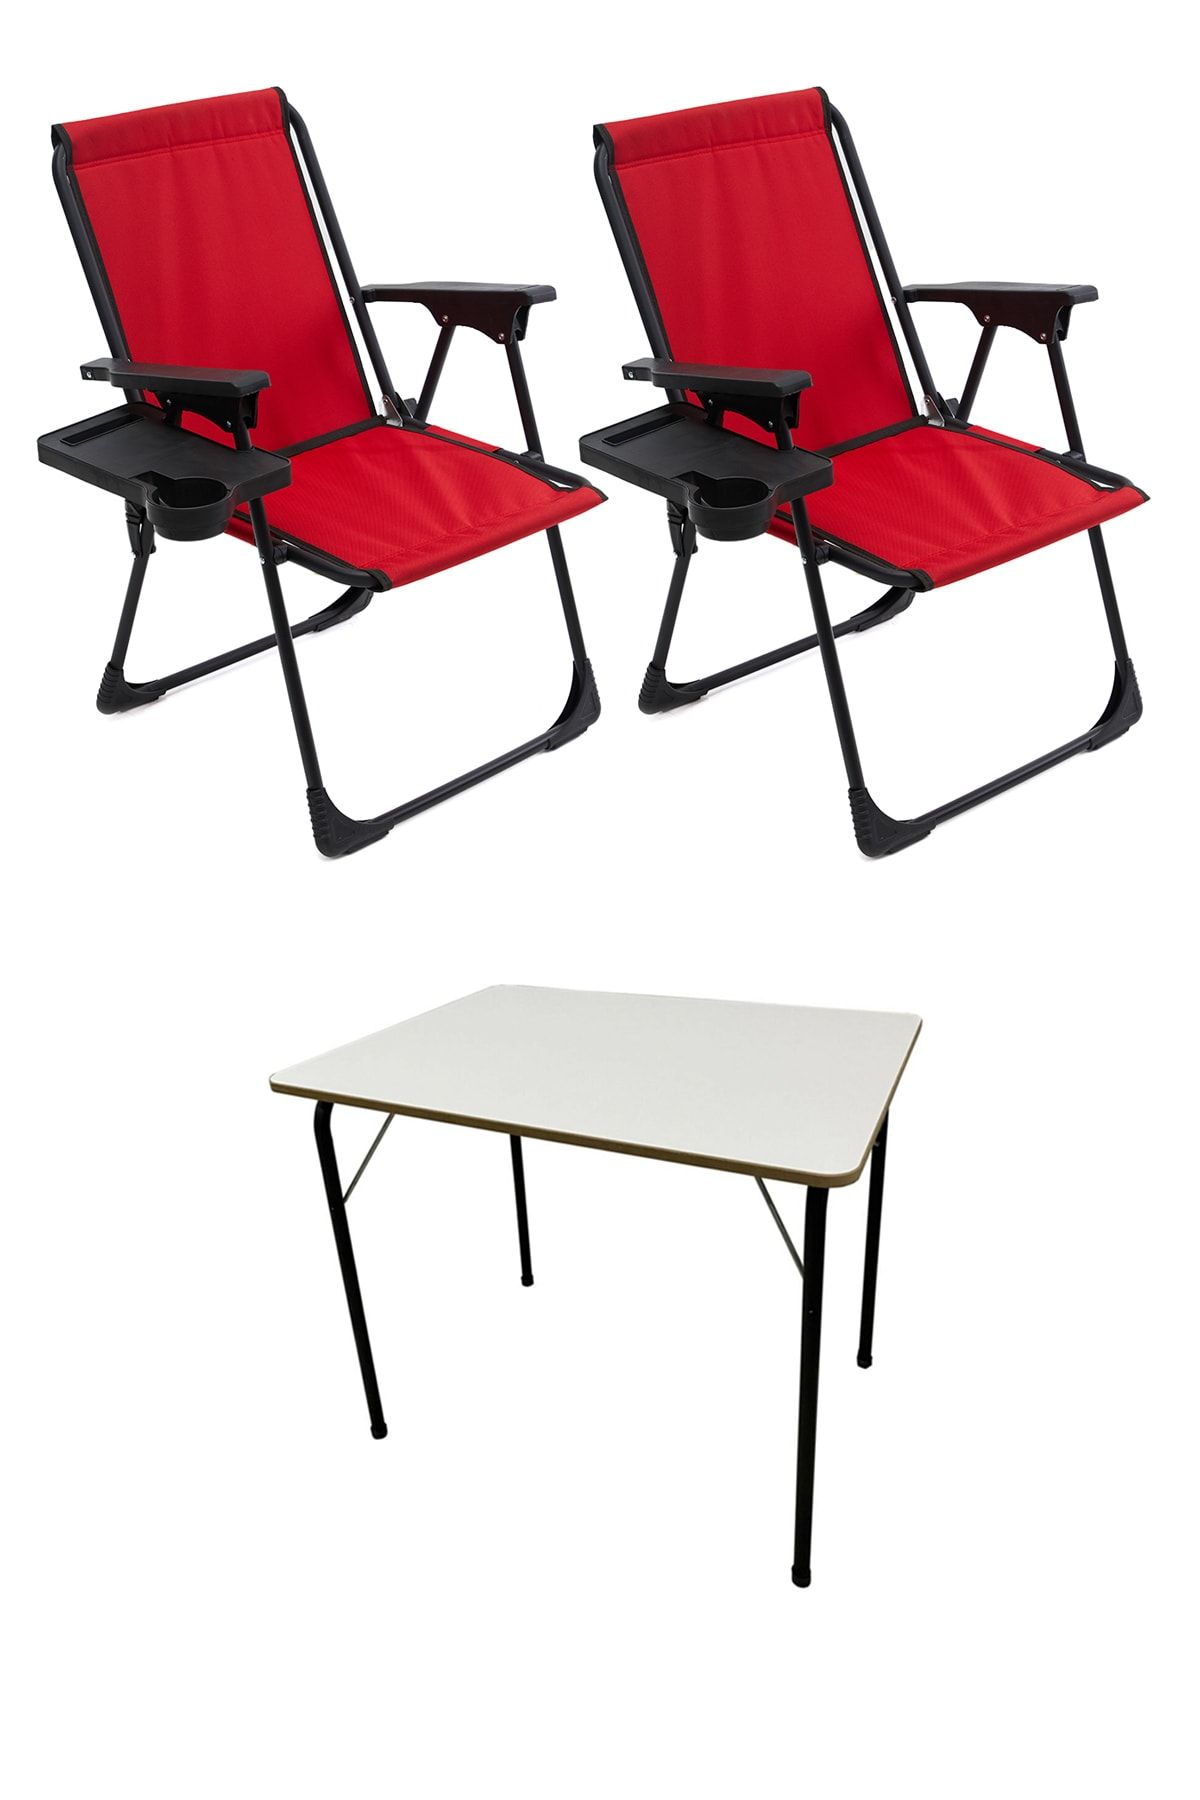 moniev Natura 2 Adet Kamp Sandalyesi Katlanır Sandalye Dikdörtgen Bardaklıklı Kırmızı Katlanır Mdf Masa